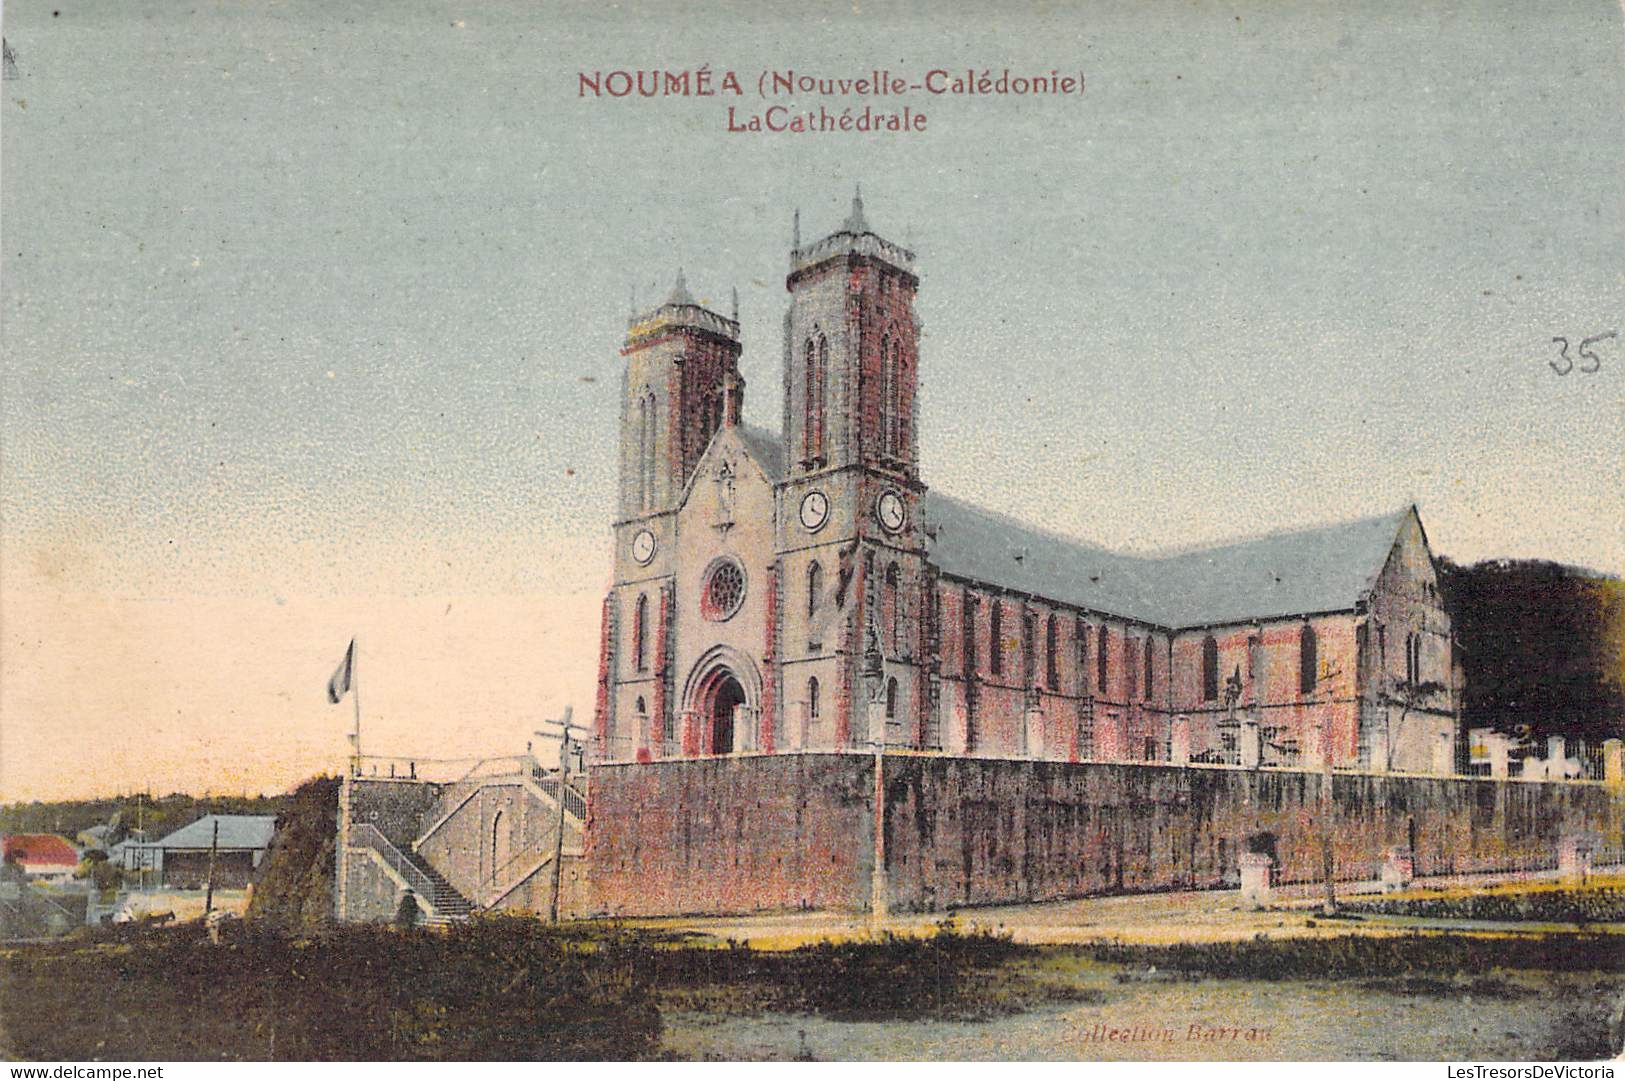 Nouvelle Calédonie - Nouméa - La Cathédrale - Clocher - Horloge - Colorisé - Carte Postale Ancienne - Nouvelle-Calédonie